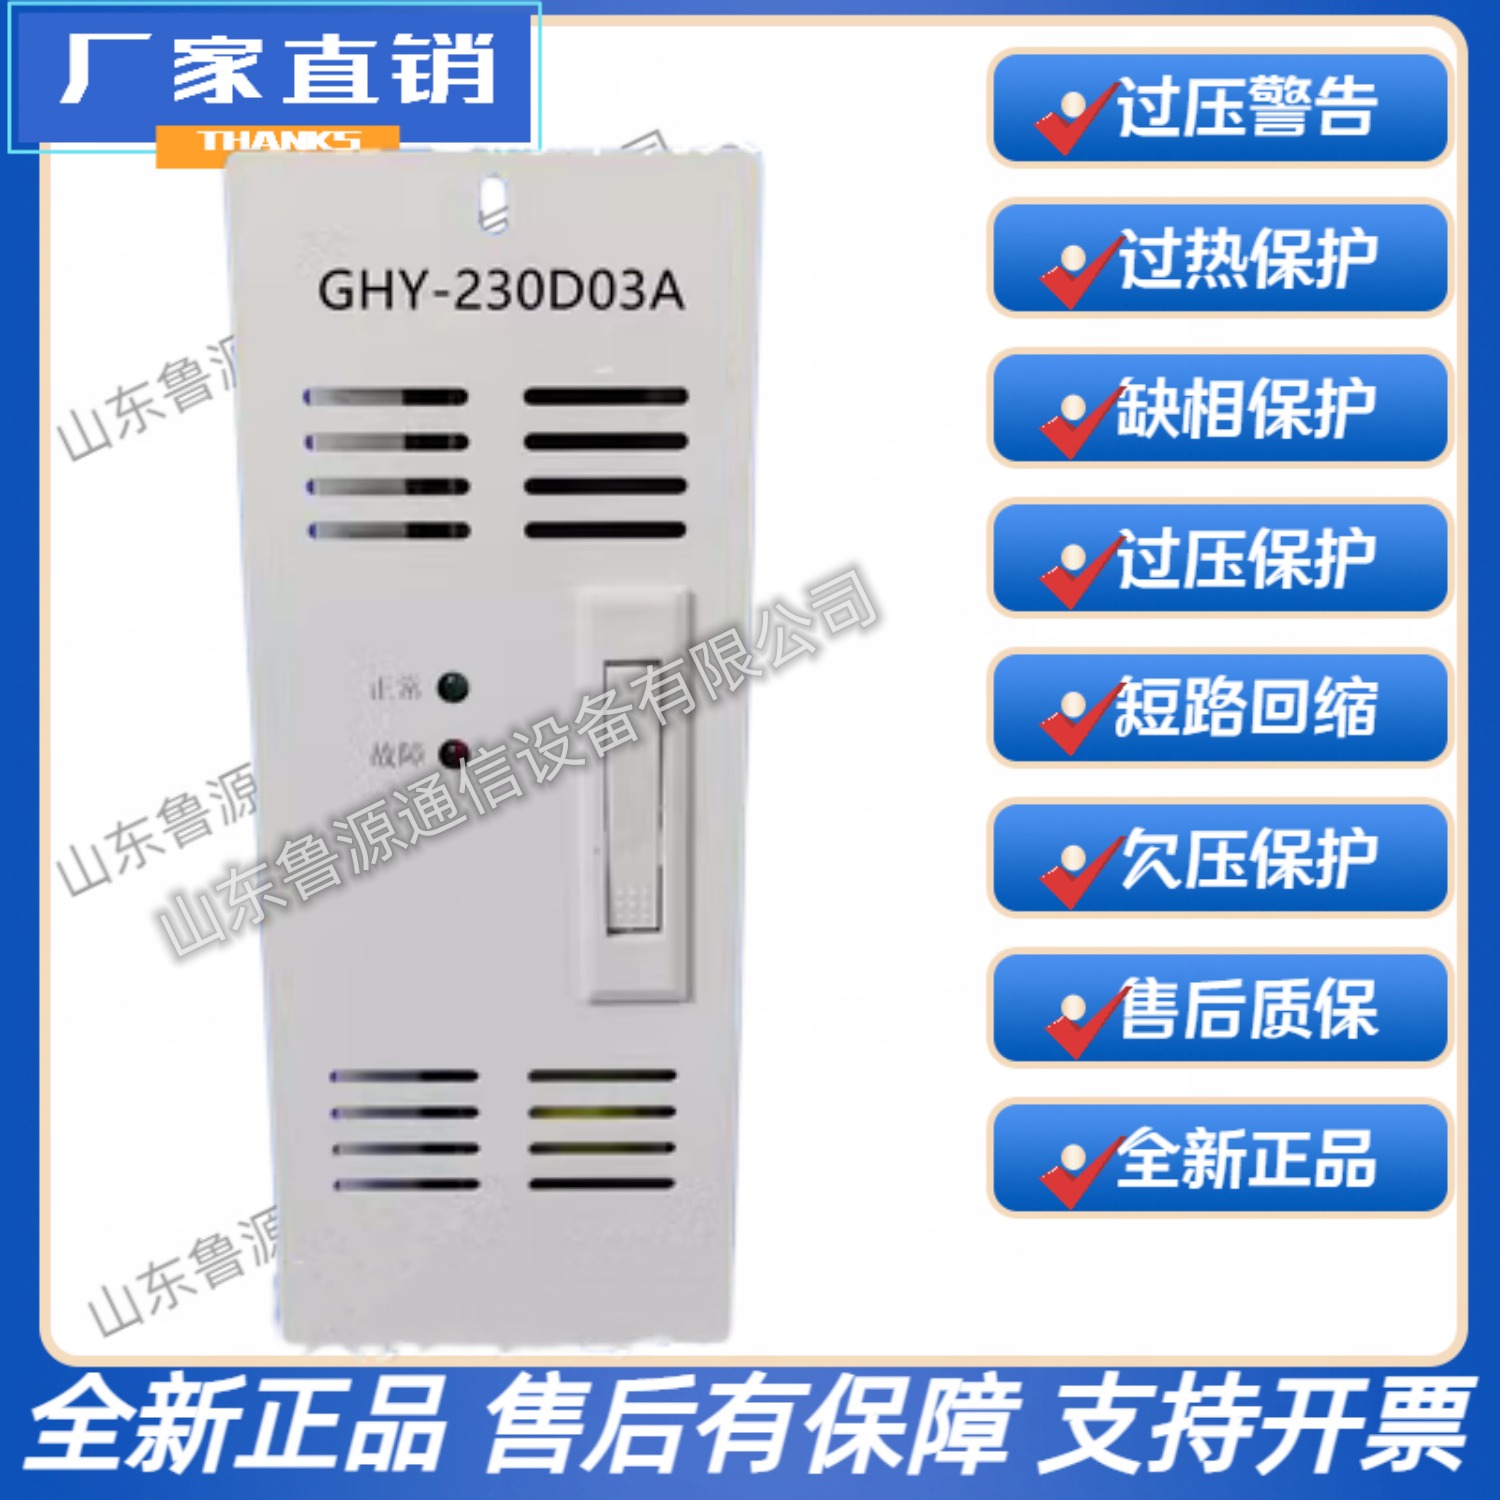 直流屏GHY-230D03A壁挂式高频开关直流电源充电模块整流模块 全新原装